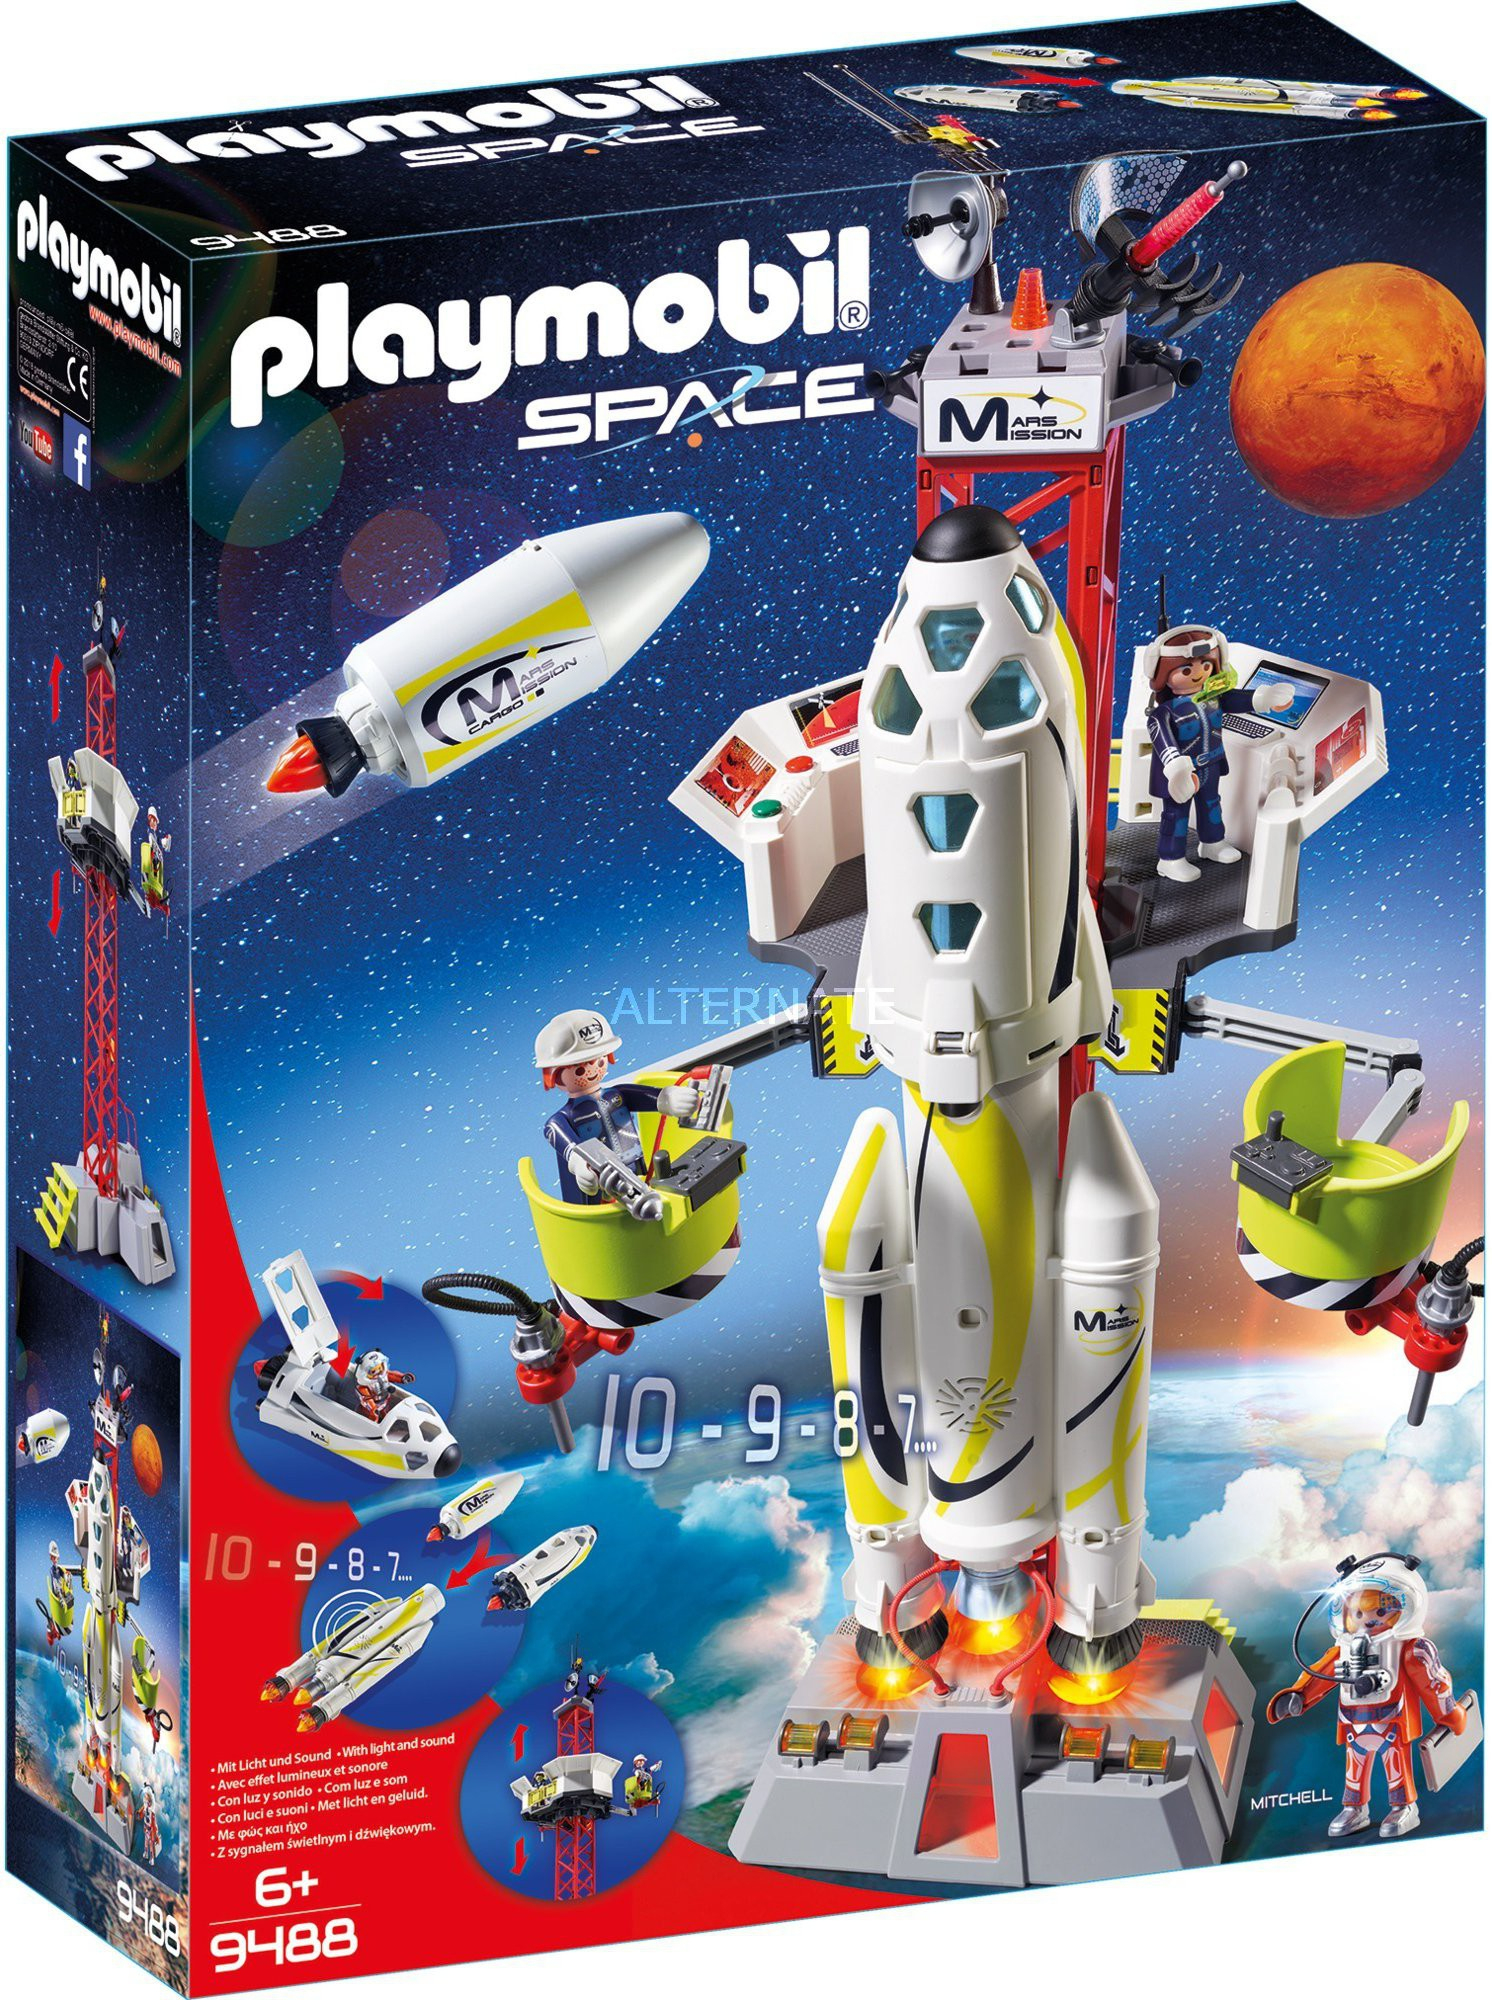 Playmobil Space Mars-Rakete Mit Startrampe (9488) Günstig Kaufen ganzes Playmobil Raumfahrt